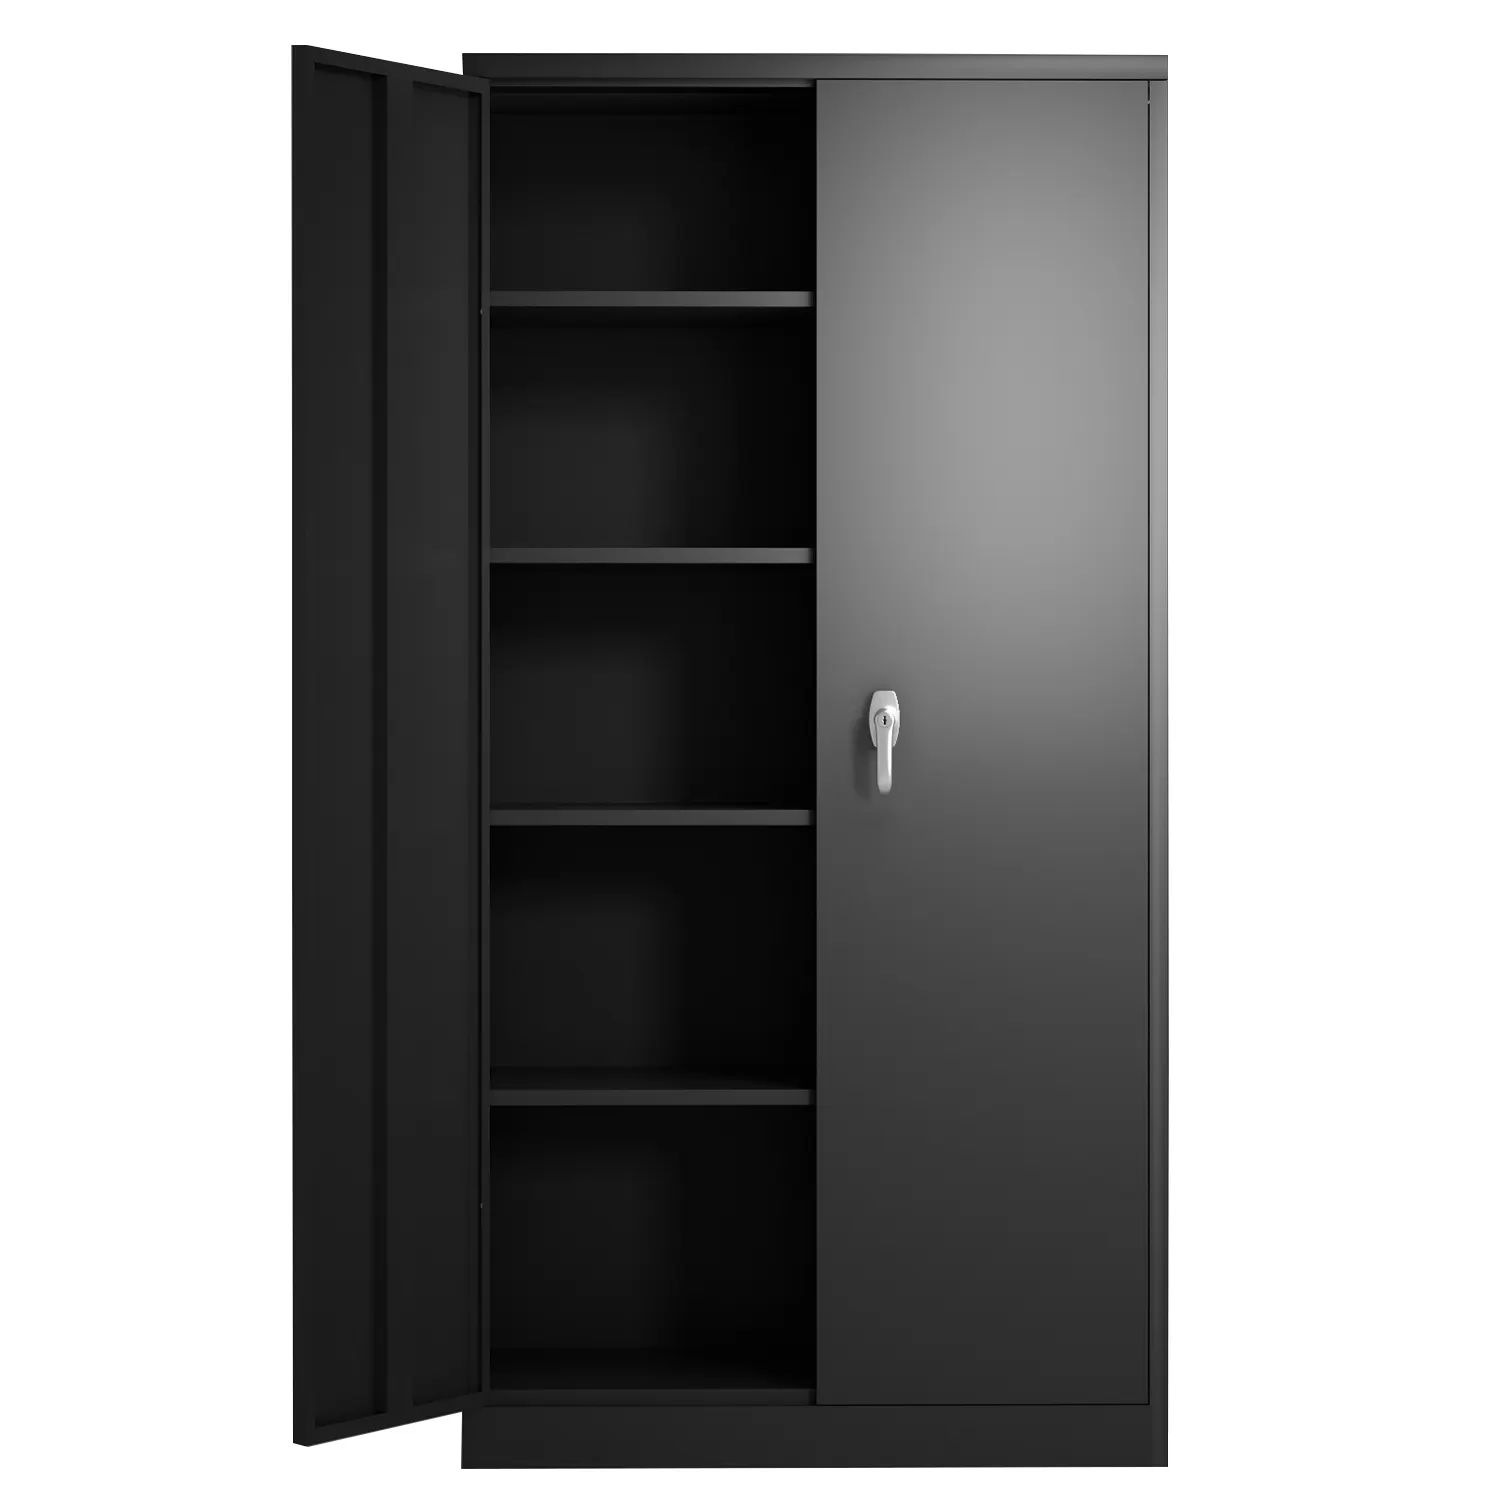 Armario de almacenamiento de Metal para oficina, estantes ajustables con bloqueo, 2 puertas, armario de acero